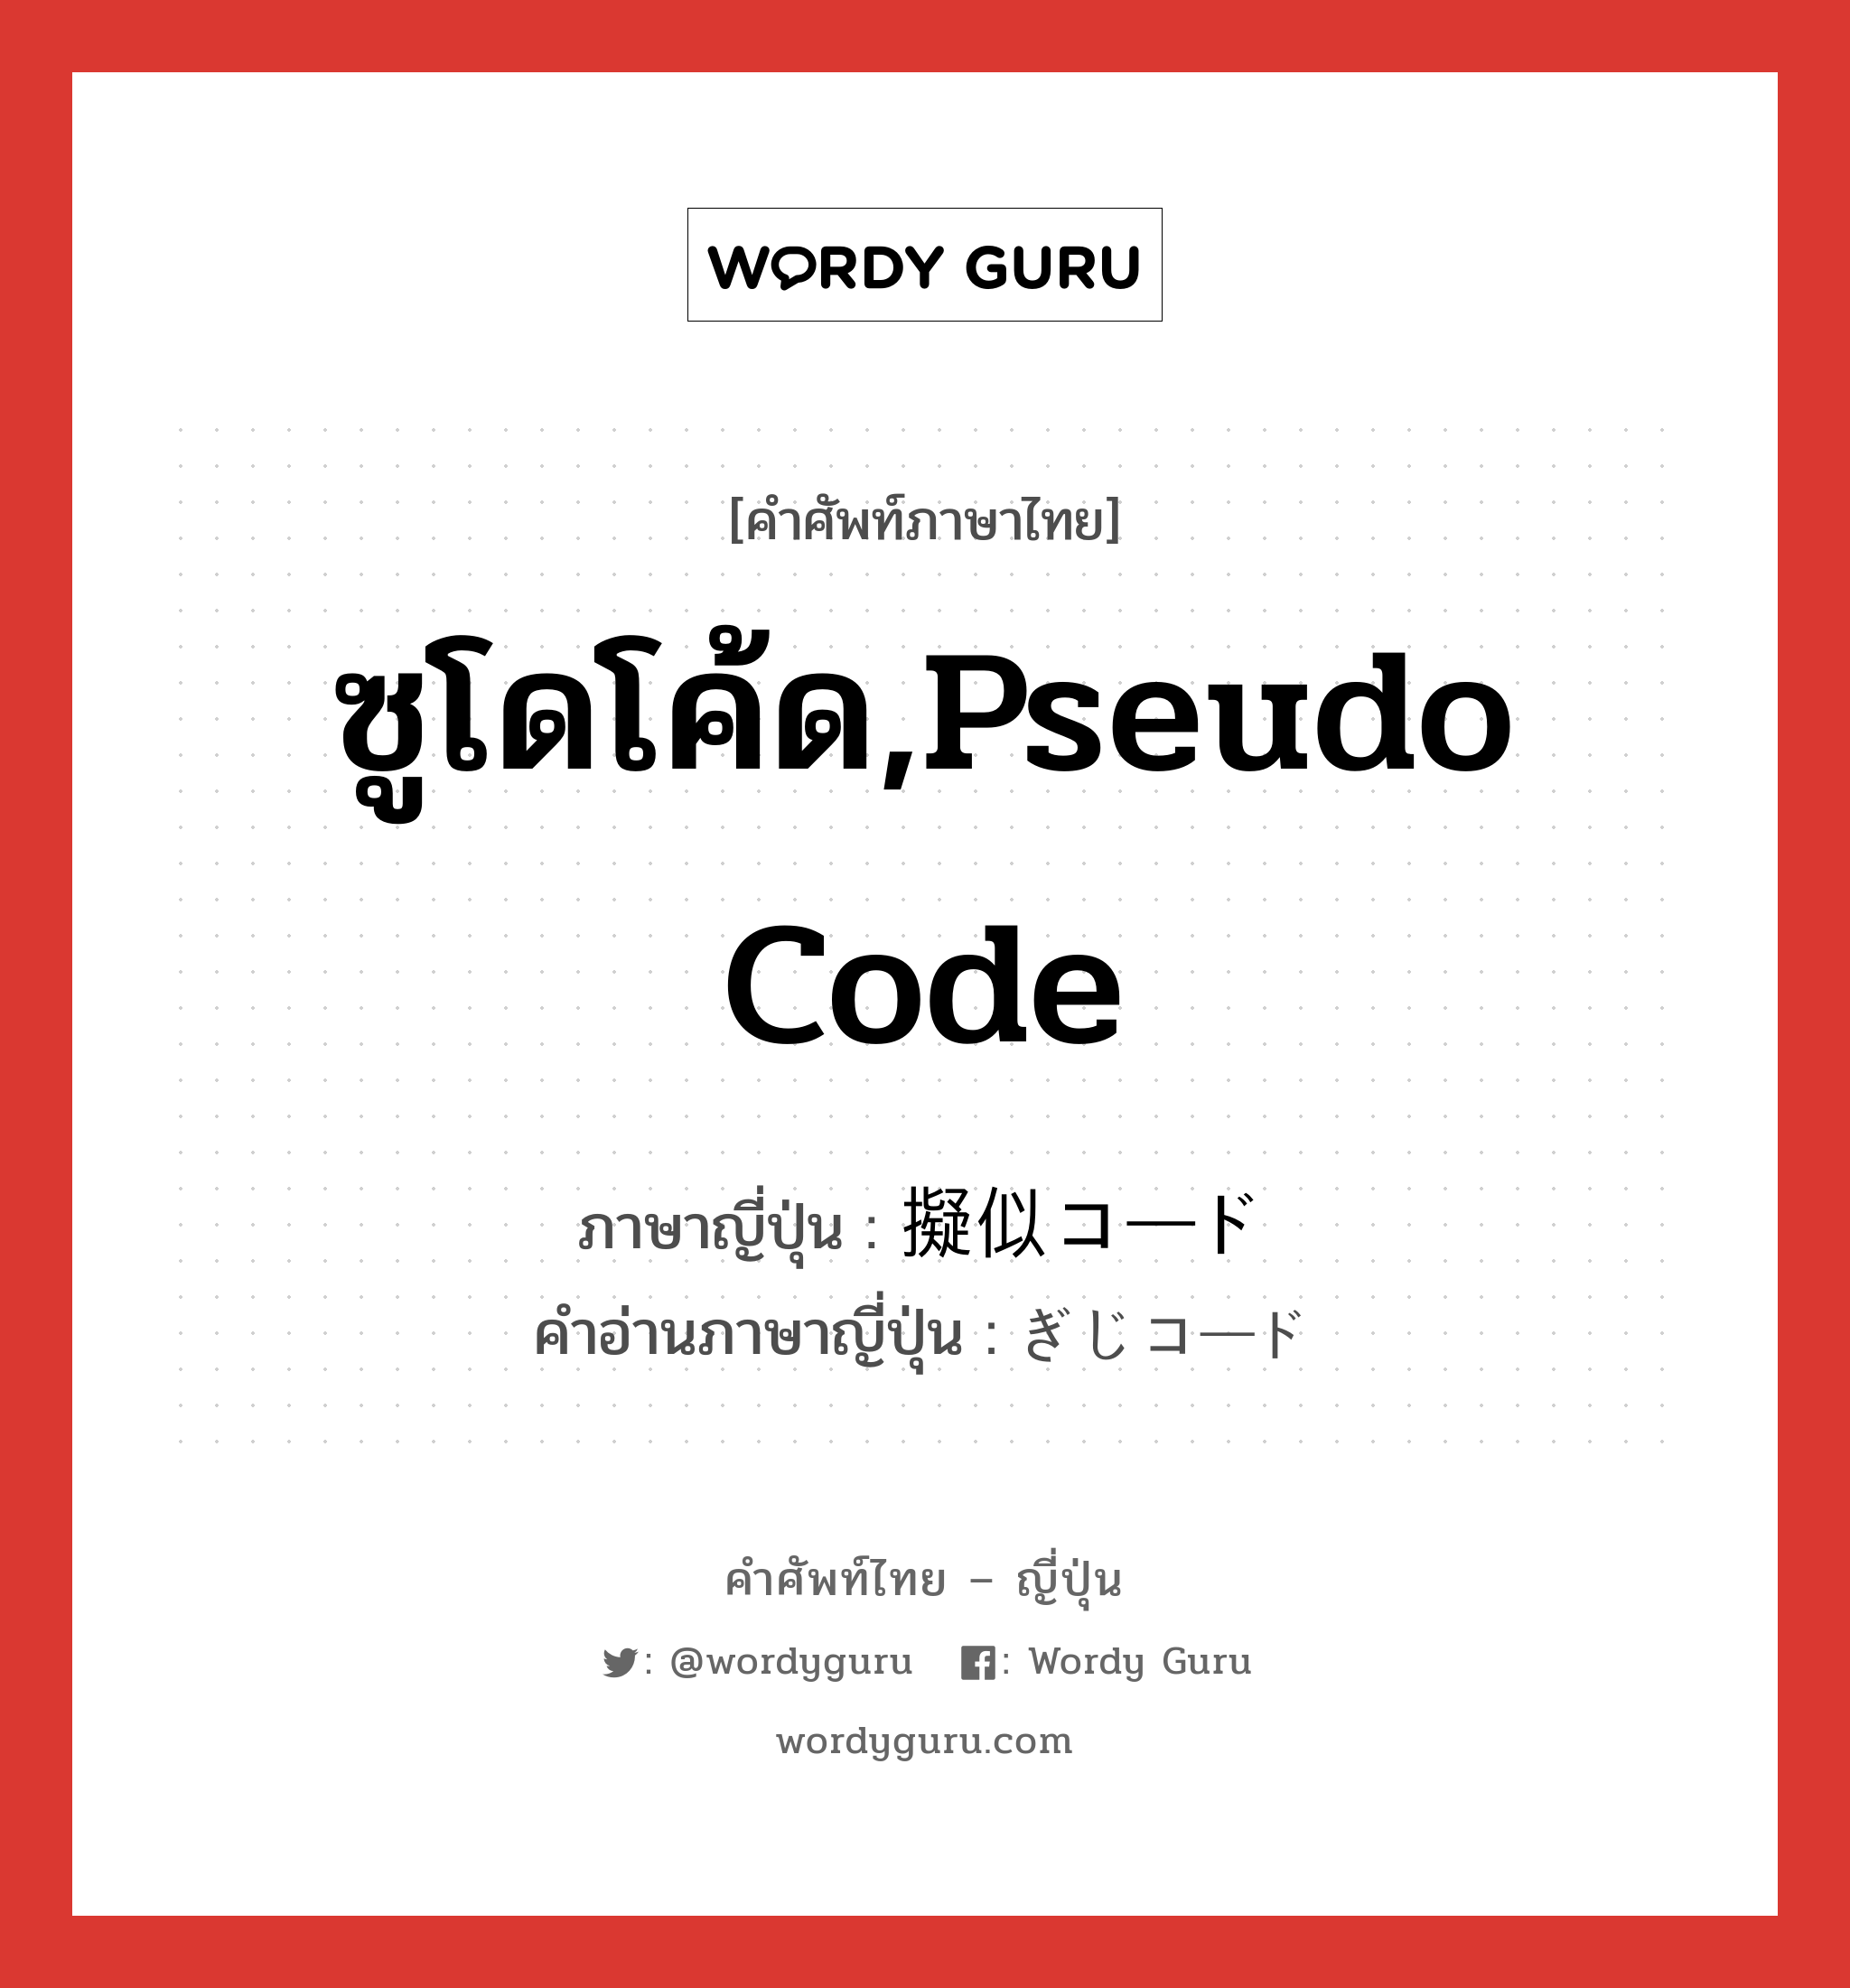 ซูโดโค้ด,pseudo code ภาษาญี่ปุ่นคืออะไร, คำศัพท์ภาษาไทย - ญี่ปุ่น ซูโดโค้ด,pseudo code ภาษาญี่ปุ่น 擬似コード คำอ่านภาษาญี่ปุ่น ぎじコード หมวด n หมวด n